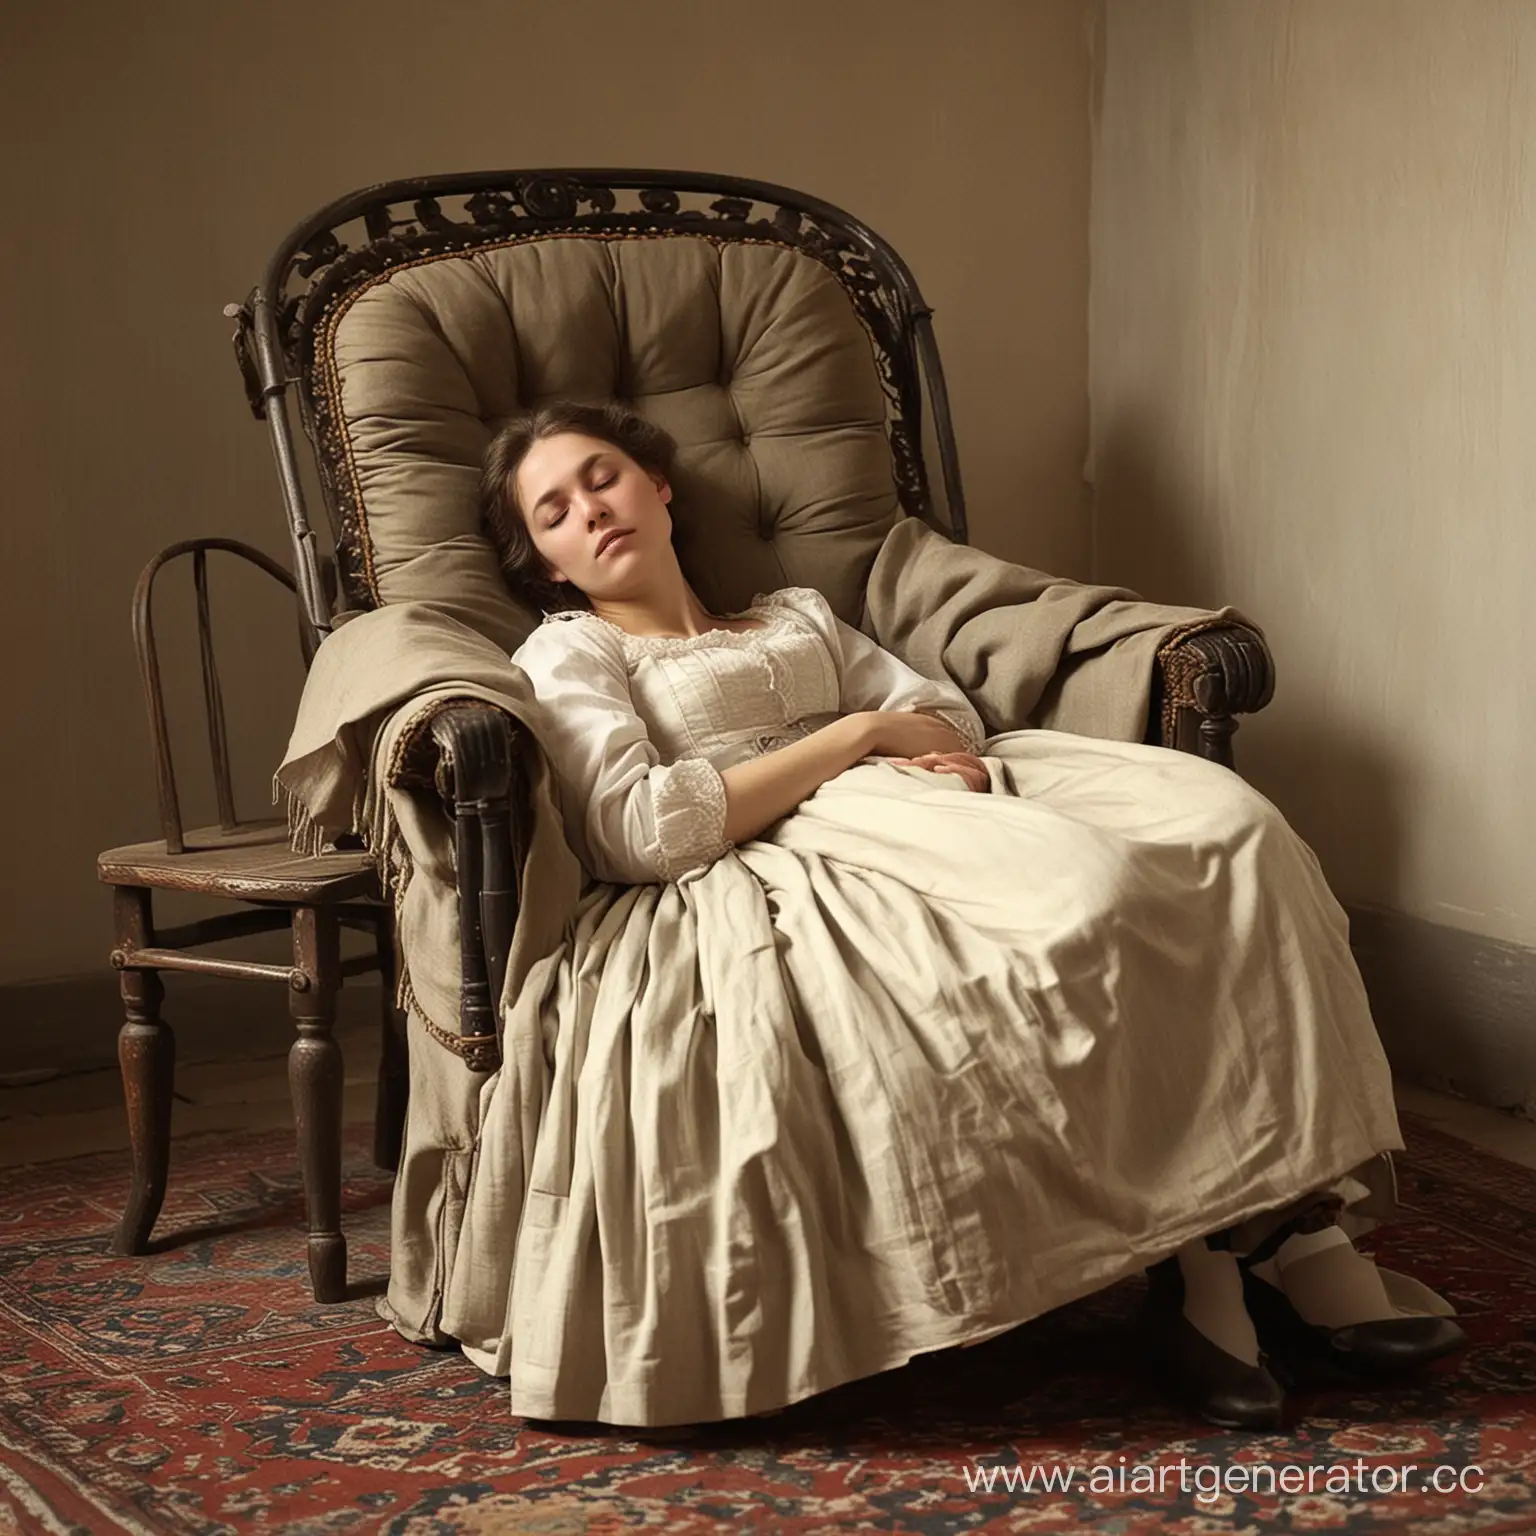 женщина в 19 веке в россии спит в кресле
